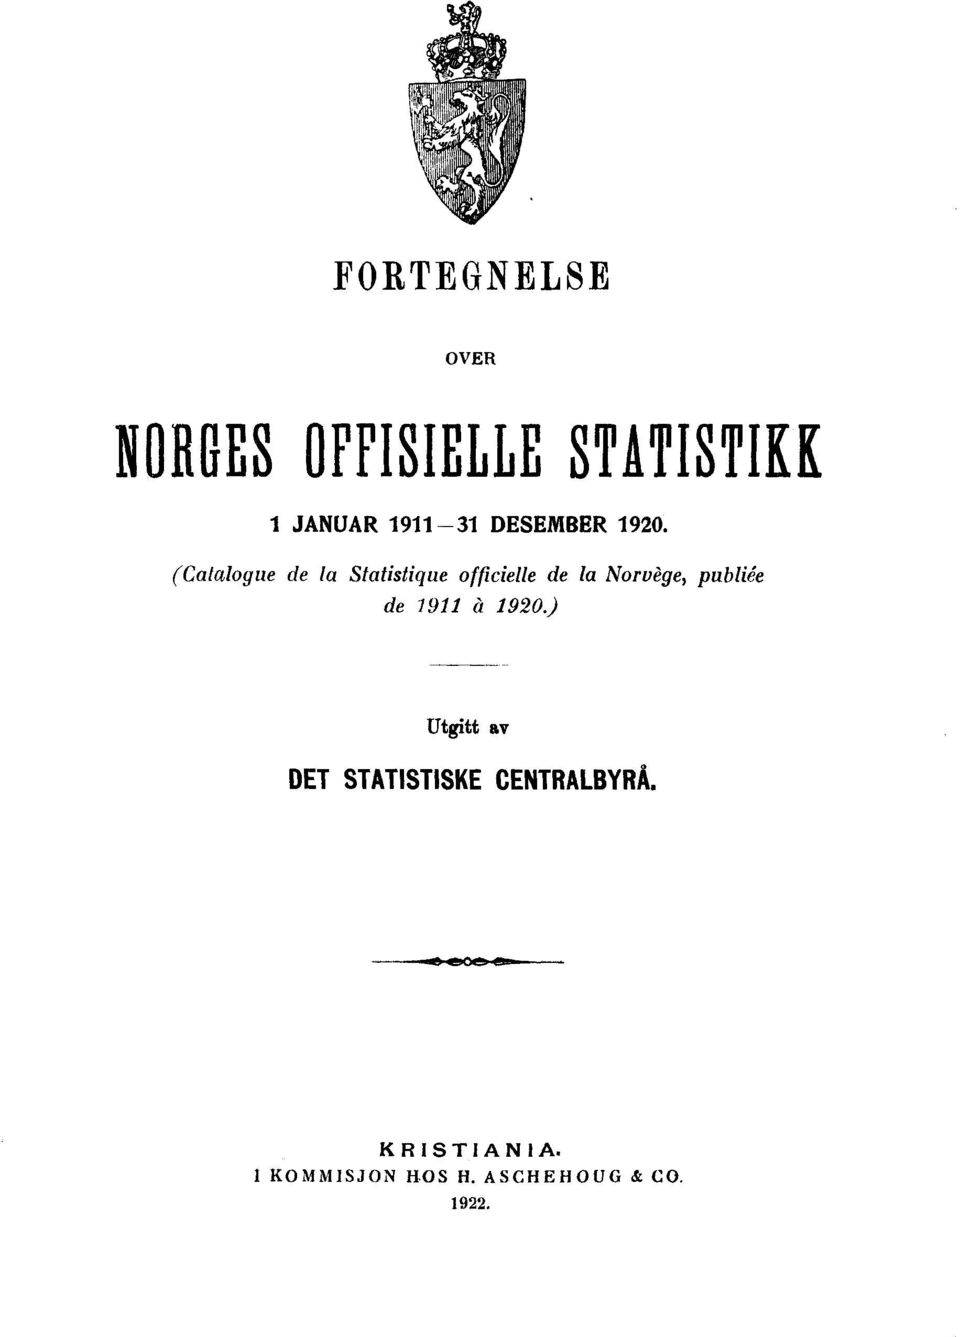 (Catalogue de la Statistique officielle de la Norvège, publiée